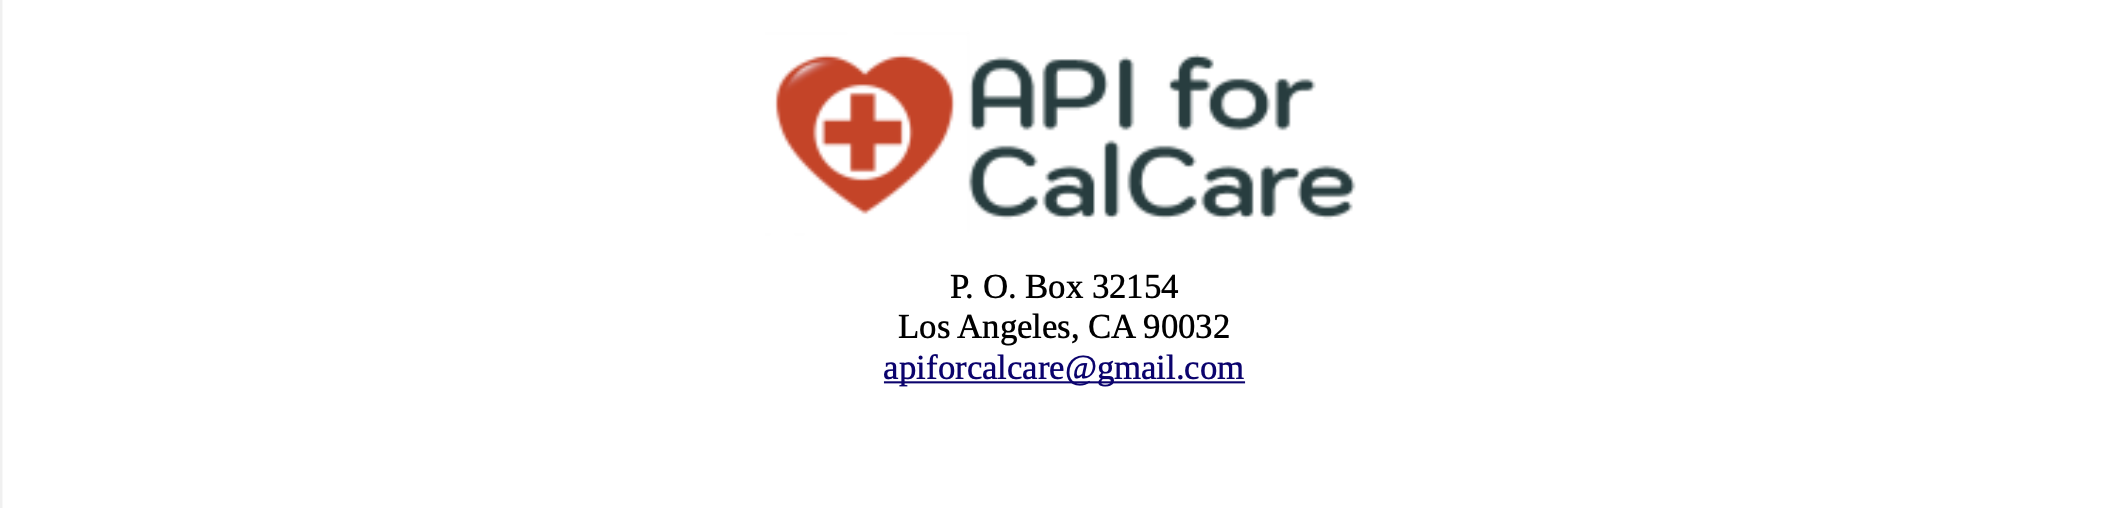 api for calcare letterhead graphic